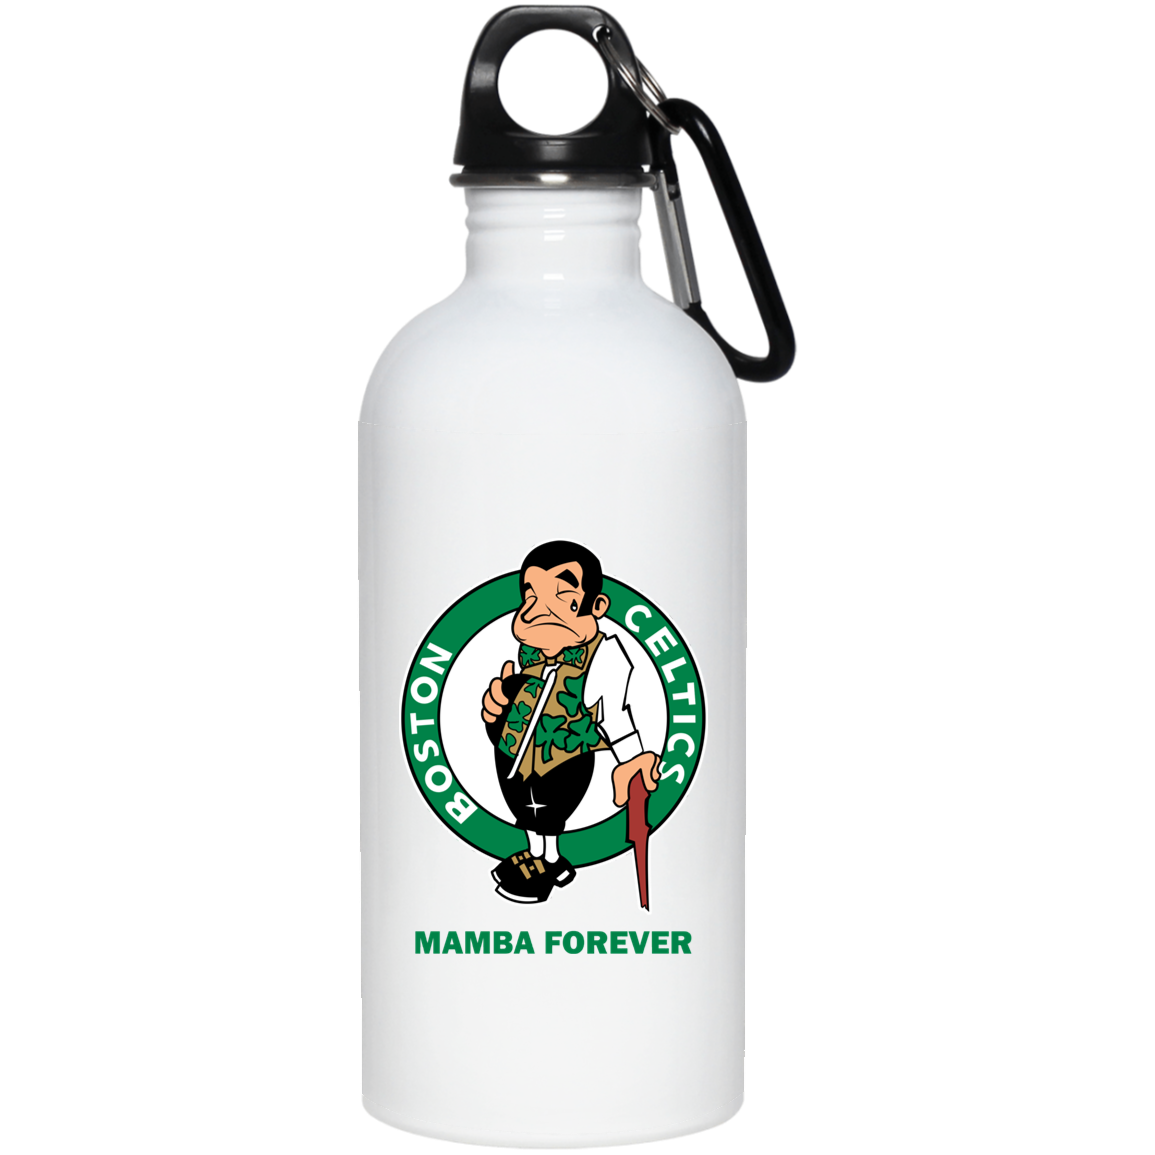 ArtichokeUSA Custom Design. RIP Kobe. Mamba Forever. Celtics / Lakers Fan Art Tribute. 20 oz. Stainless Steel Water Bottle